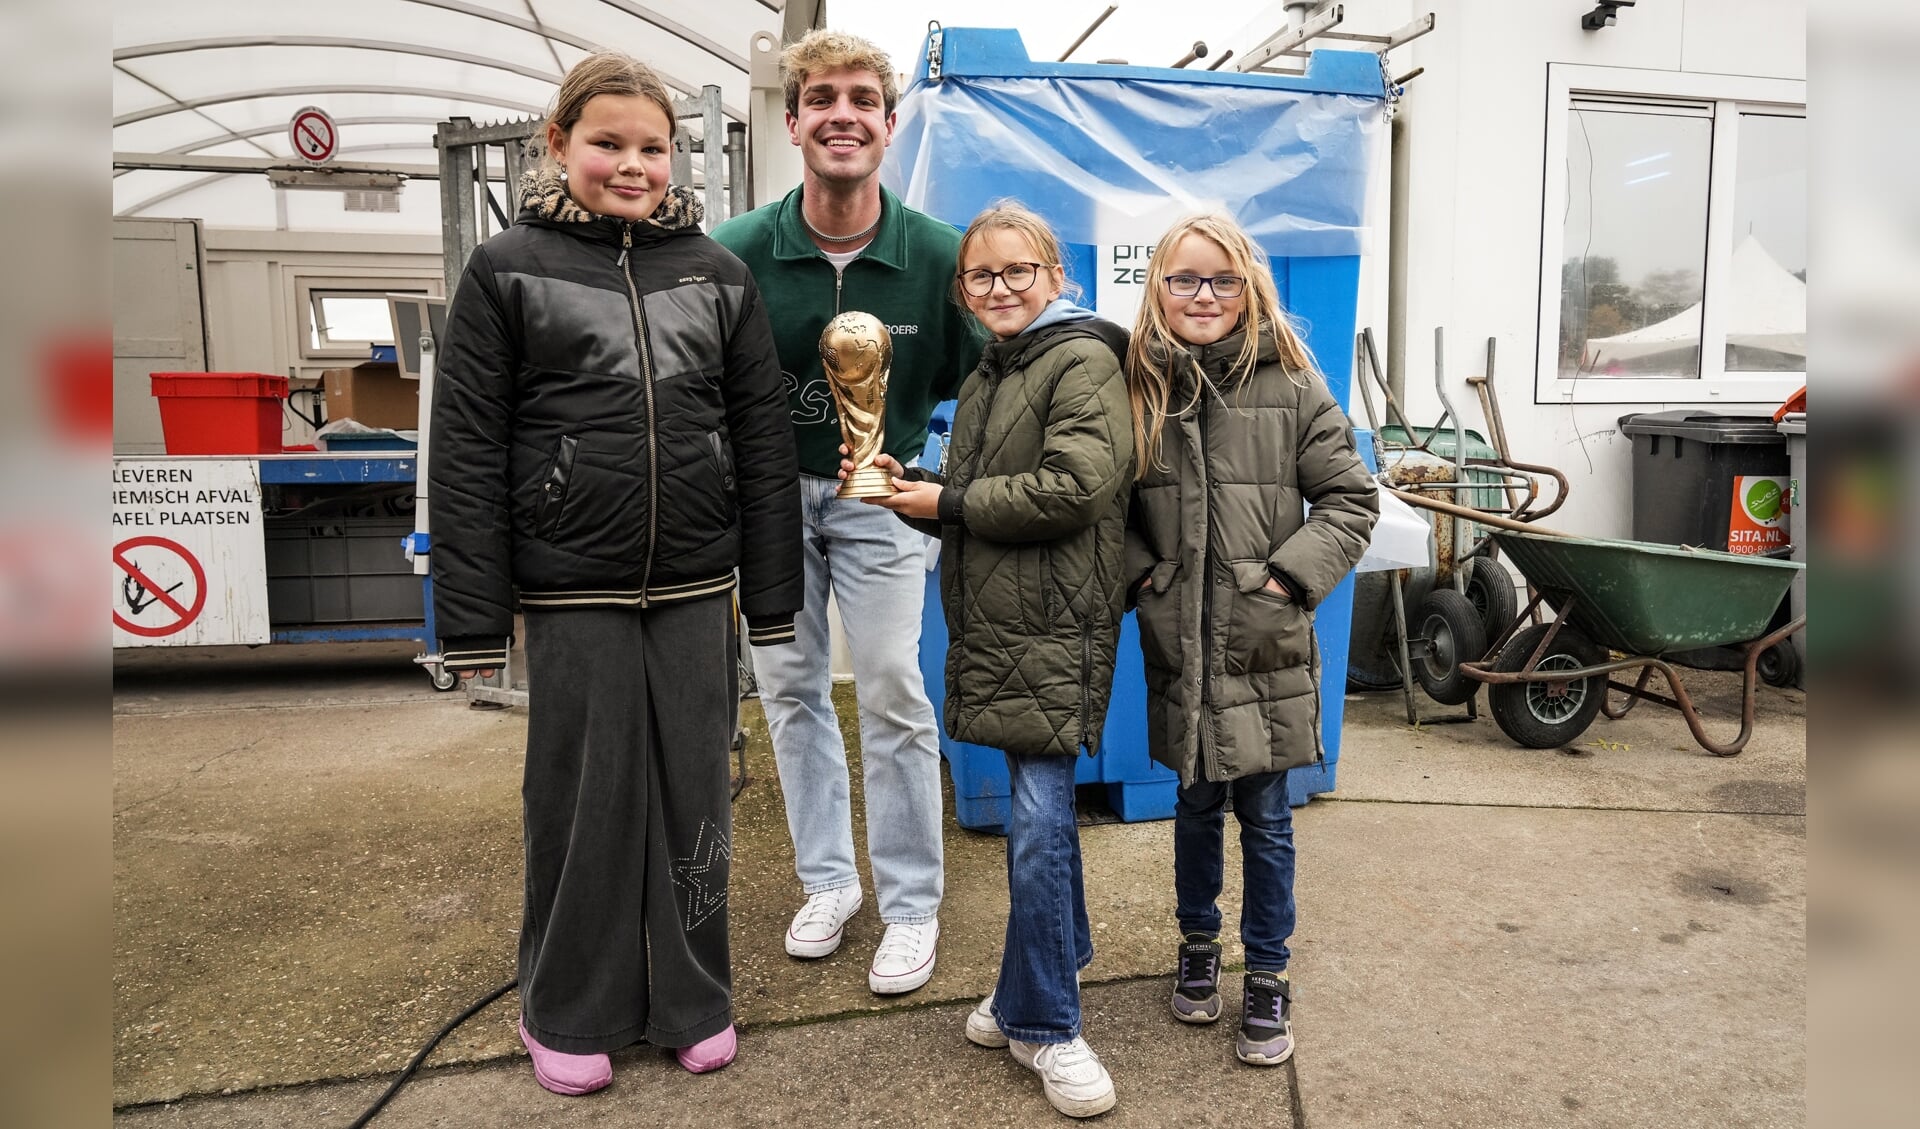 TikTokker Jesse van Wieren met de winnaars van de textielrace van OBS Twa yn Ien tijdens de Dag van het Afval 